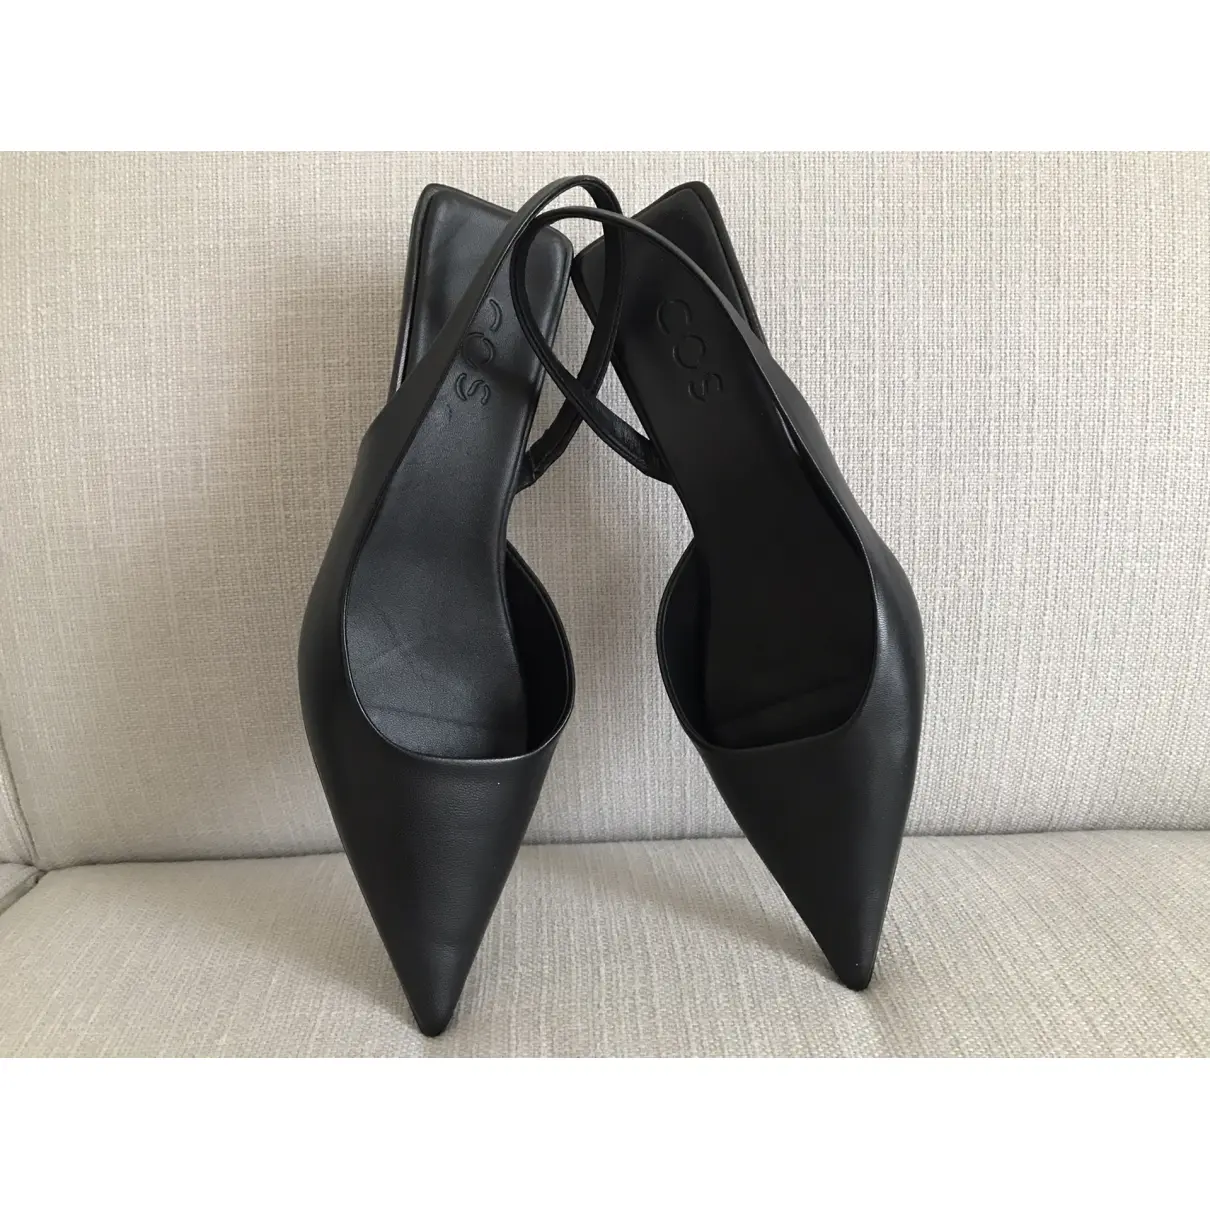 Buy Cos Leather heels online